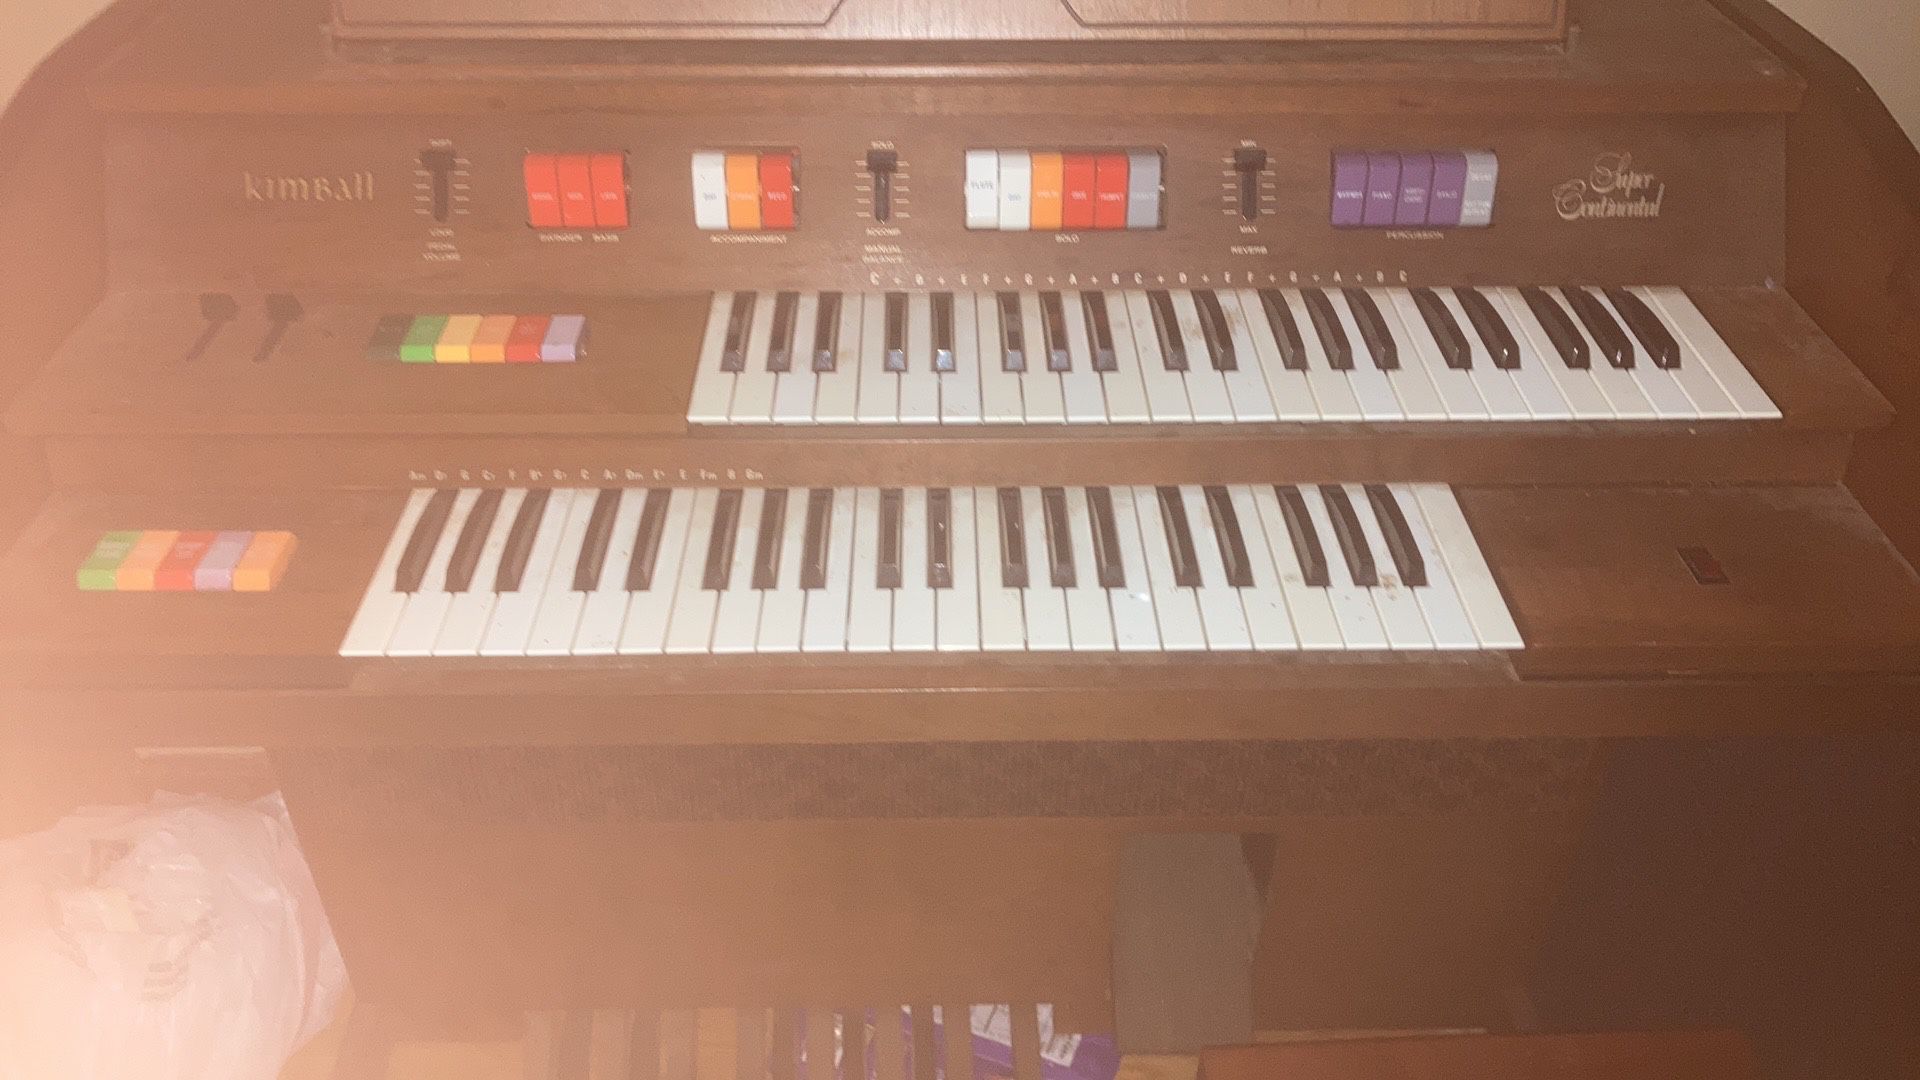 Kimball Super Continental Organ Piano